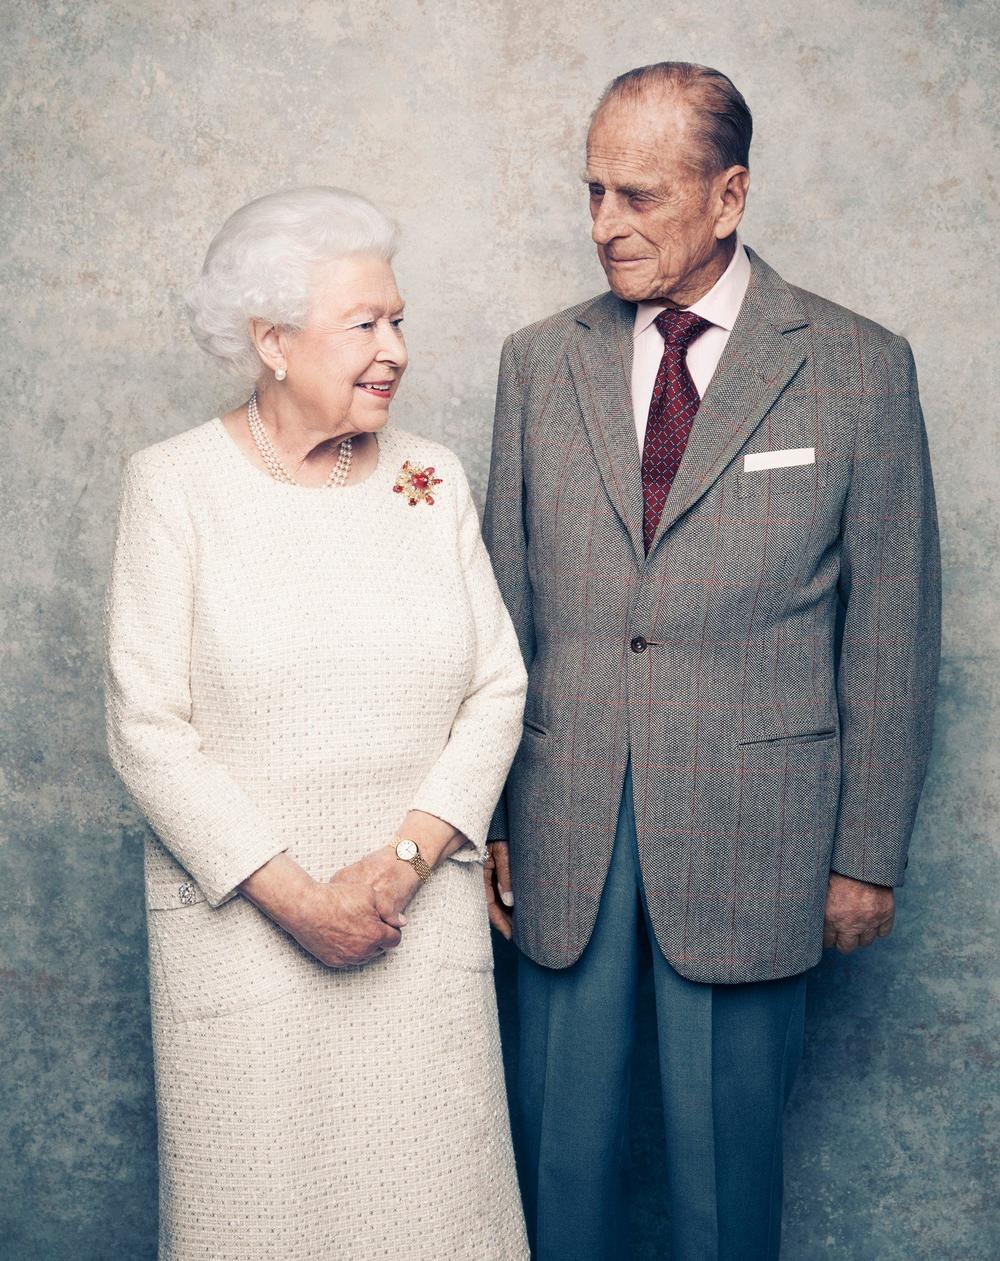 <p>Očekivani životni vek Britanaca je vrlo visok — on iznosi čak 80 godina. Ipak, kraljica Elizabeta II i njen suprug princ Flip doživeli su starost koja prevazilazi i ovu granicu. Kako im je to pošlo za rukom?</p>